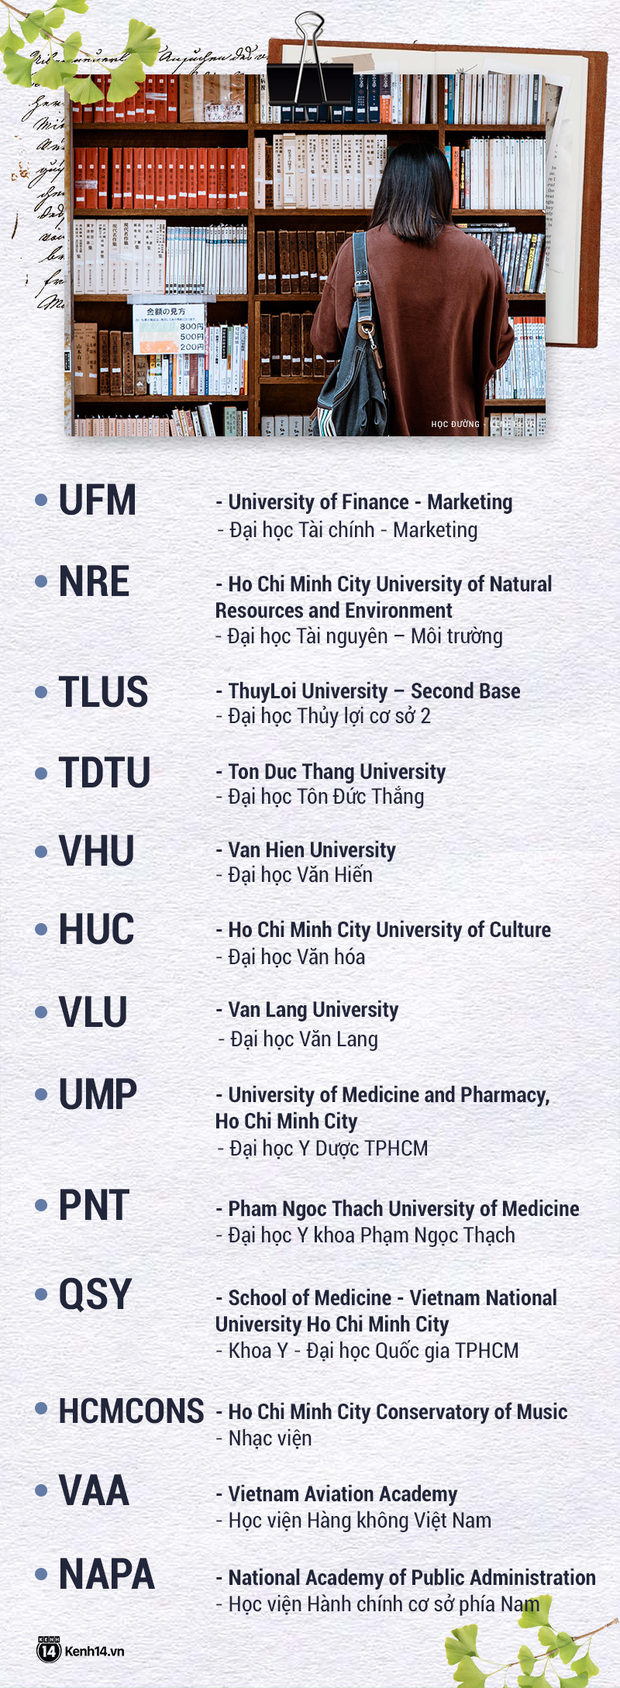 Rối não với tên viết tắt các trường đại học: FTU, HUST, HUTECH